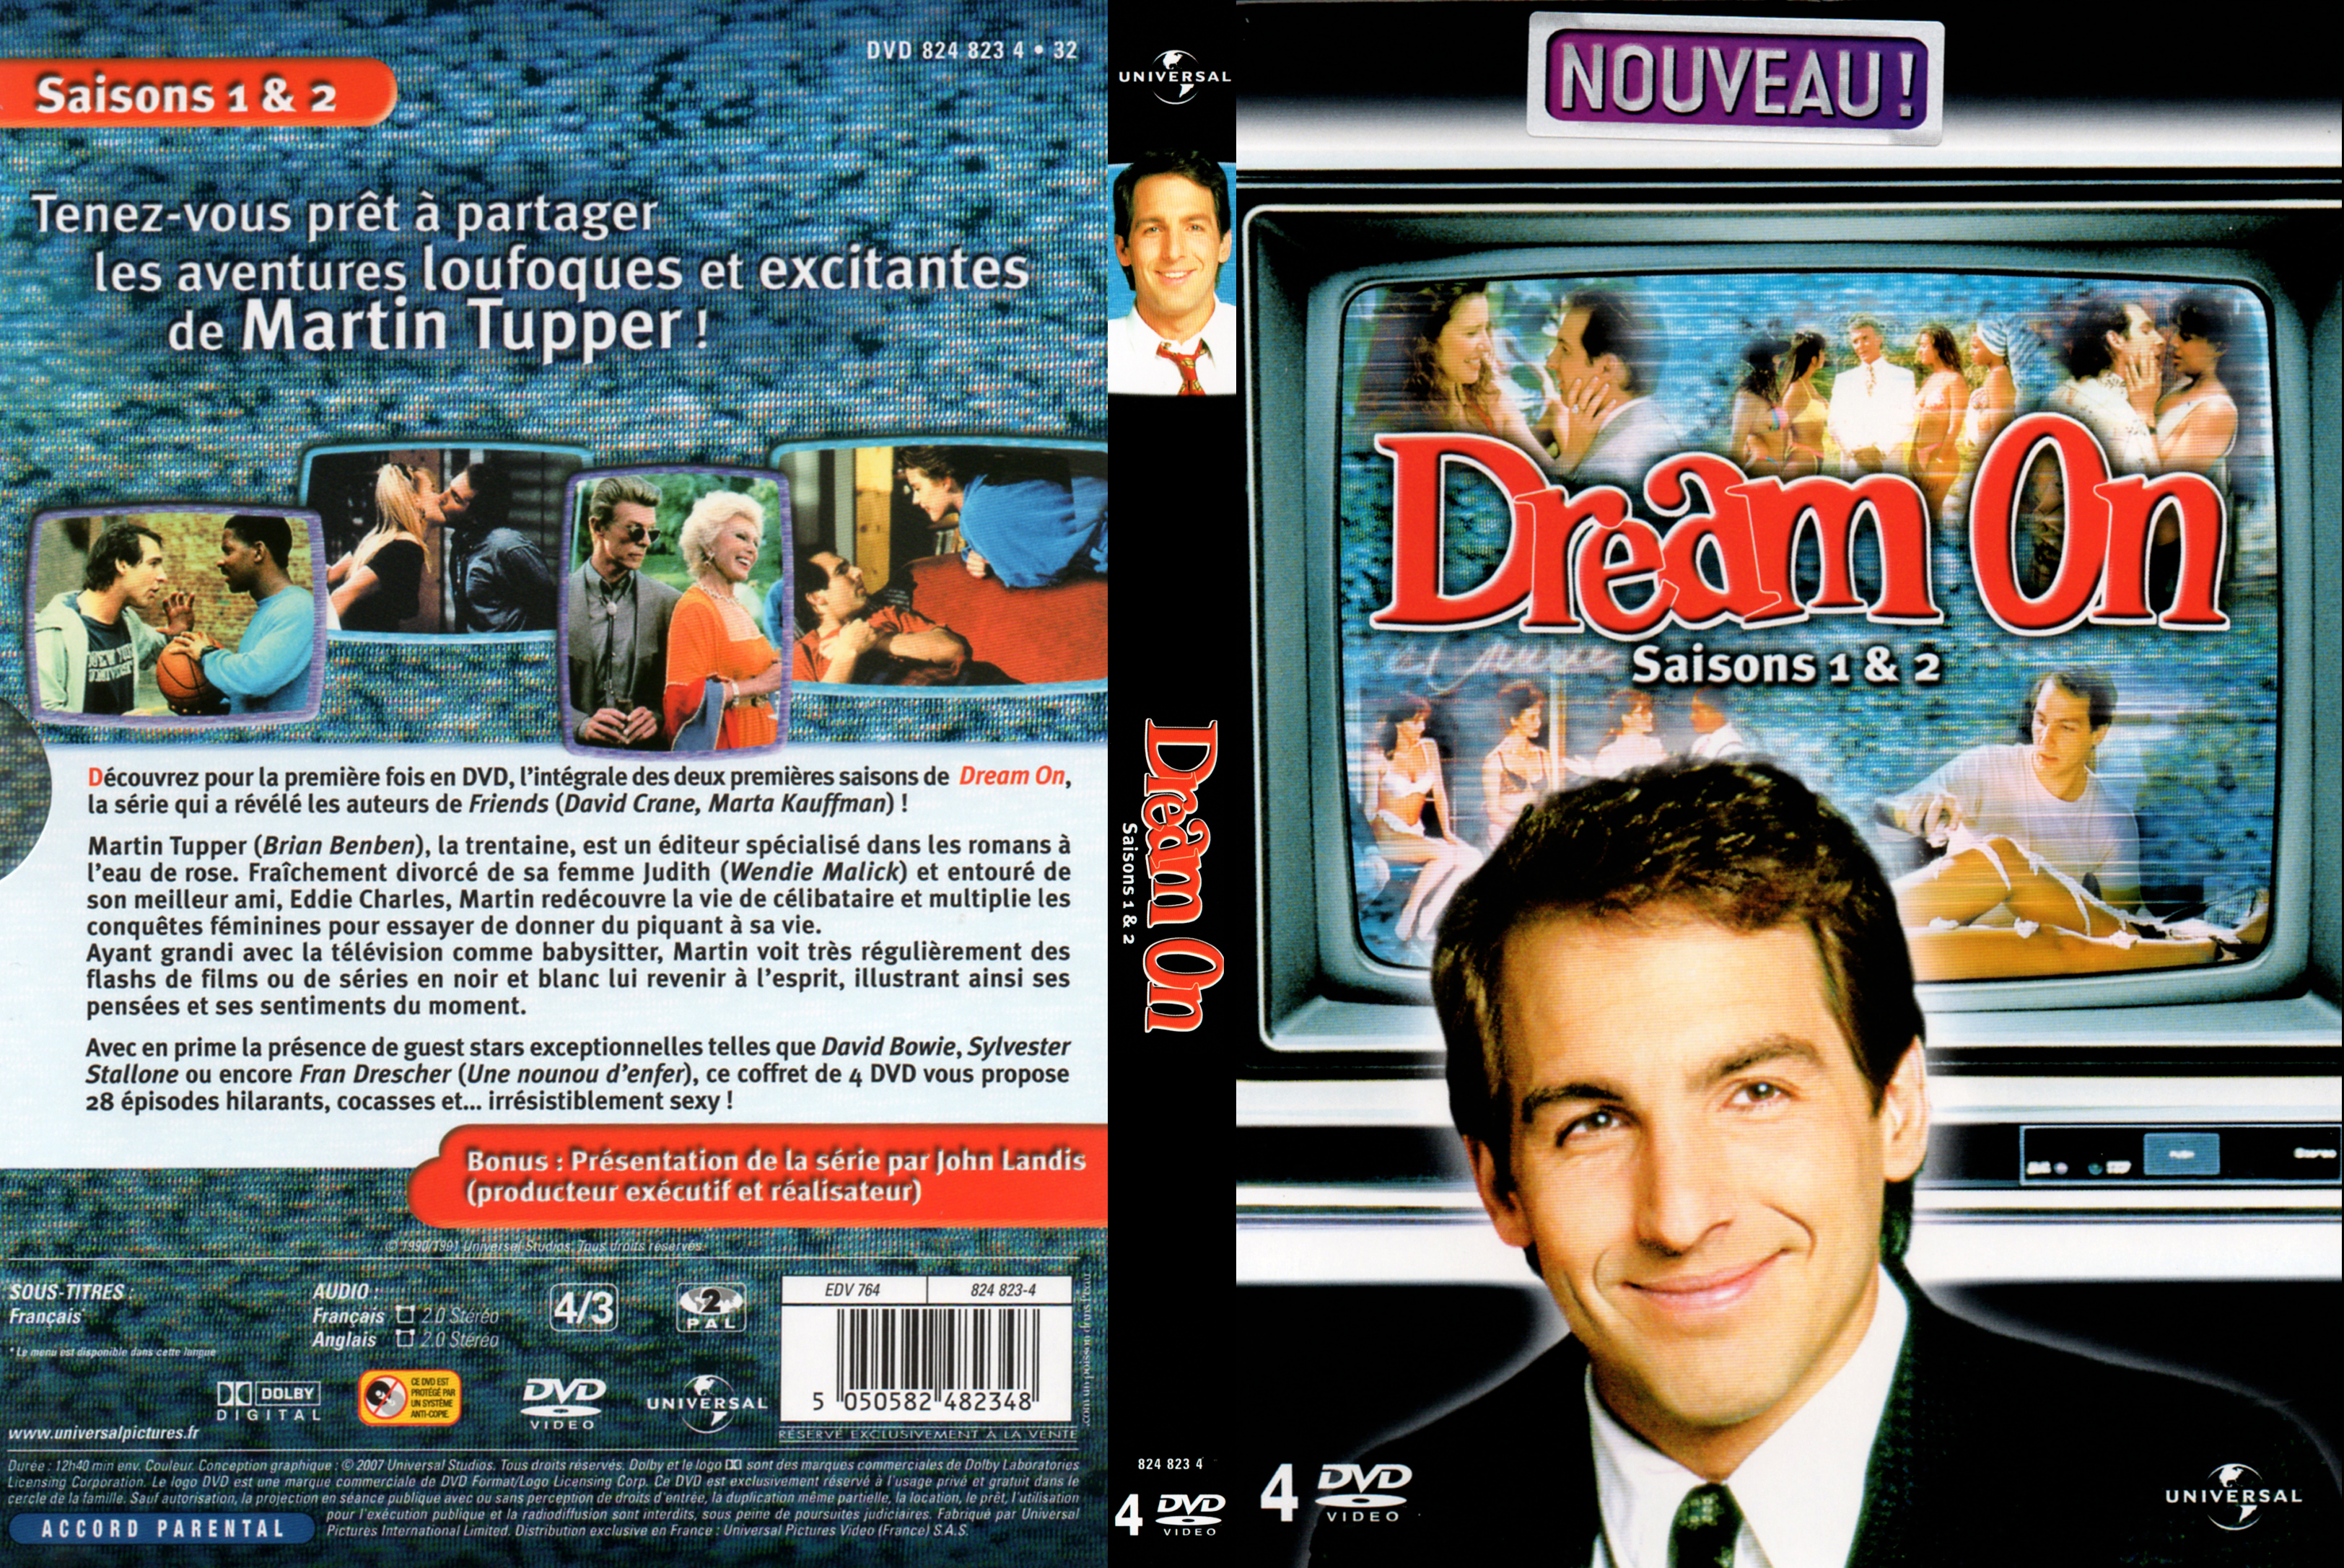 Jaquette DVD Dream on Saison 1 & 2